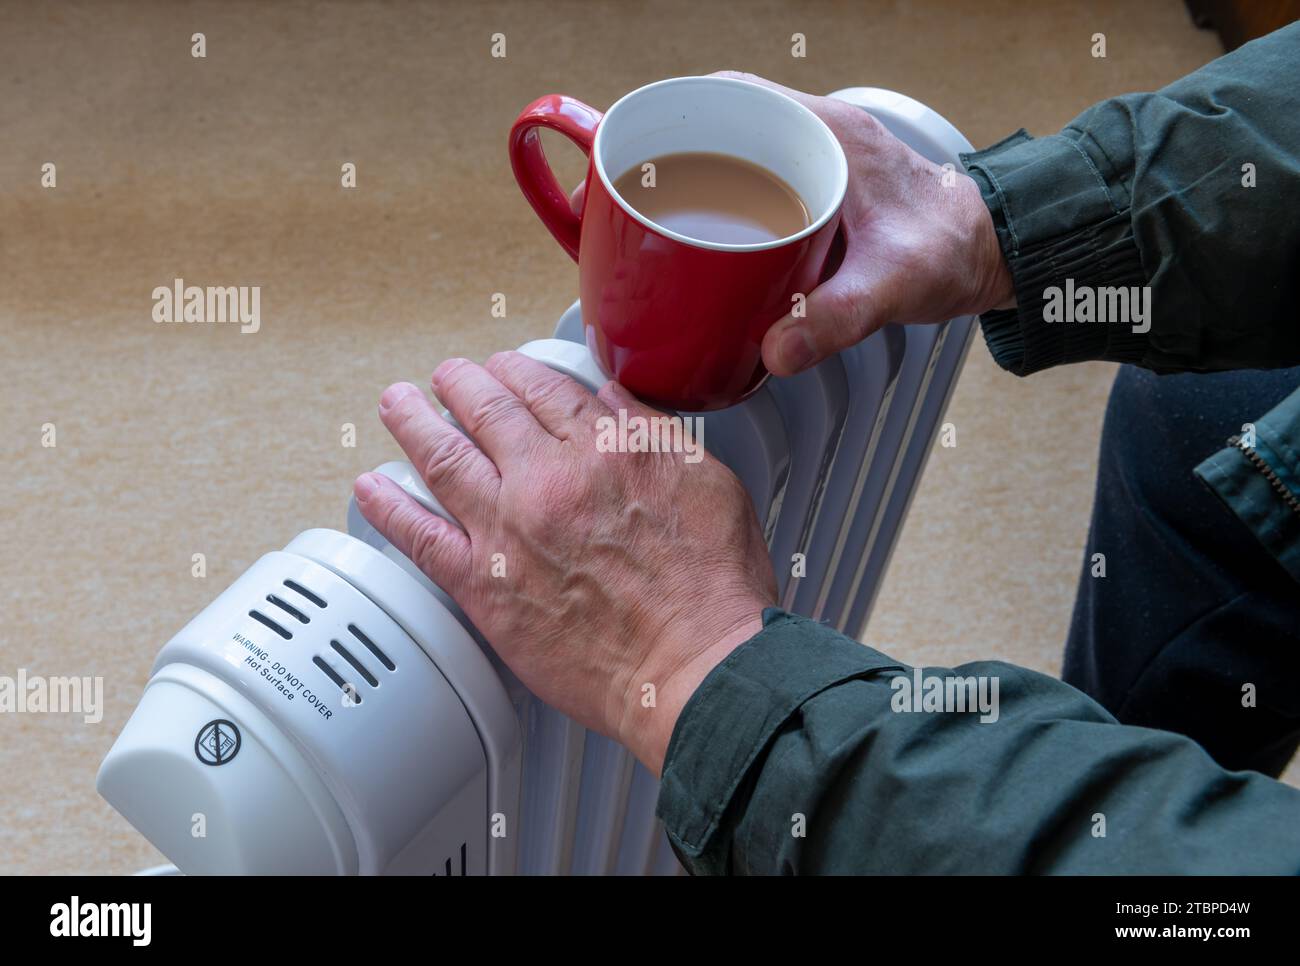 Eine Person, die eine heiße Tasse Tee hält und die Hände auf einem tragbaren, ölgefüllten Heizgerät in einem Wohnzimmer wärmt. Stockfoto